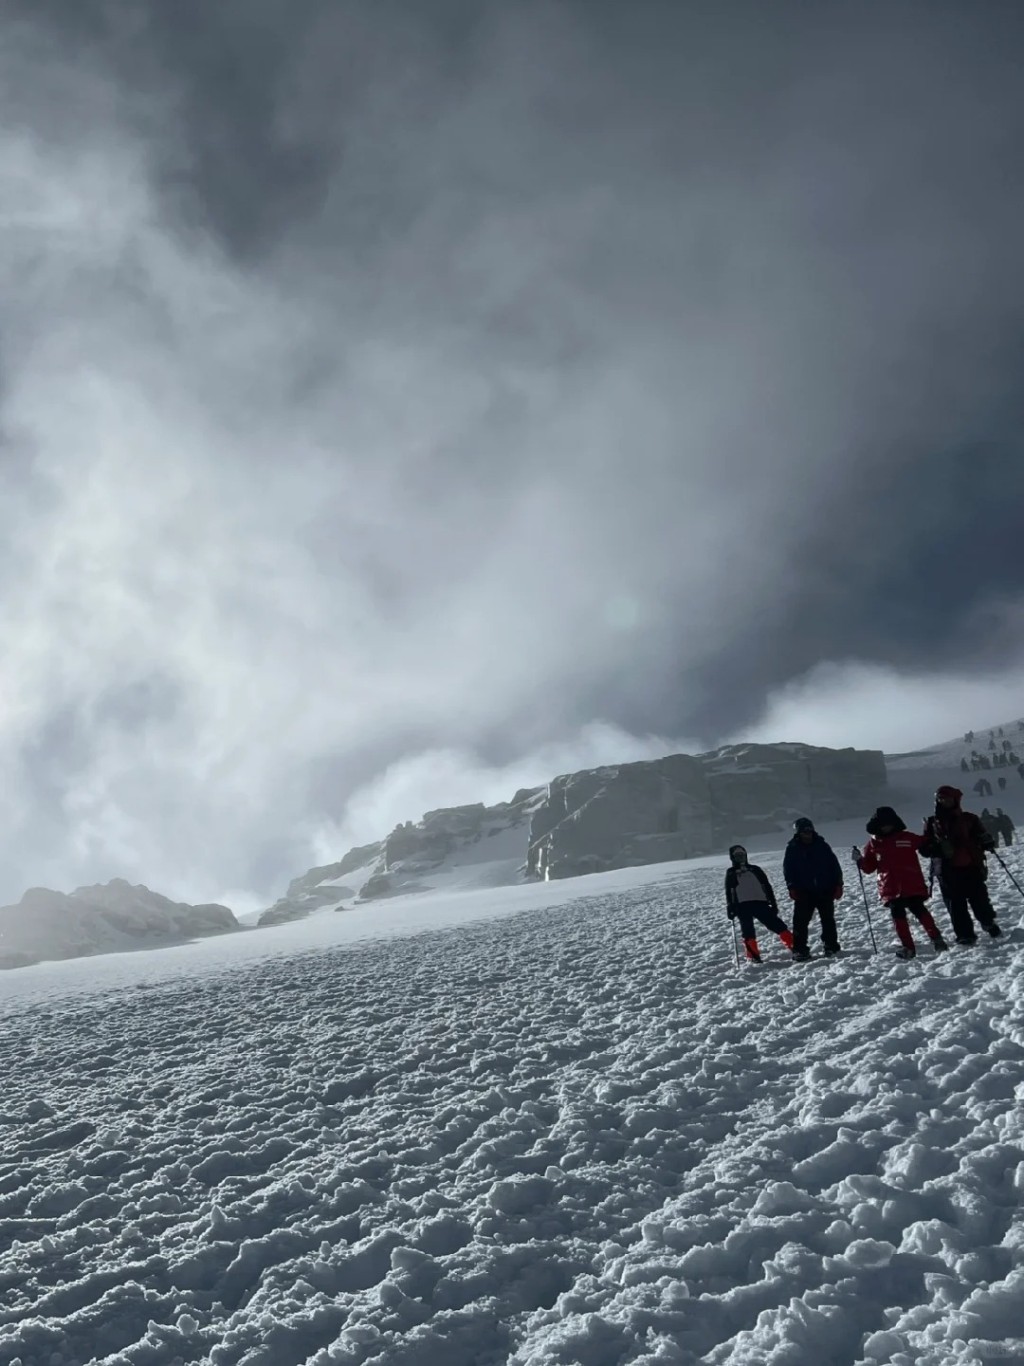 哈巴雪山被指是入门级雪山，近年受年轻登山者欢迎。小红书